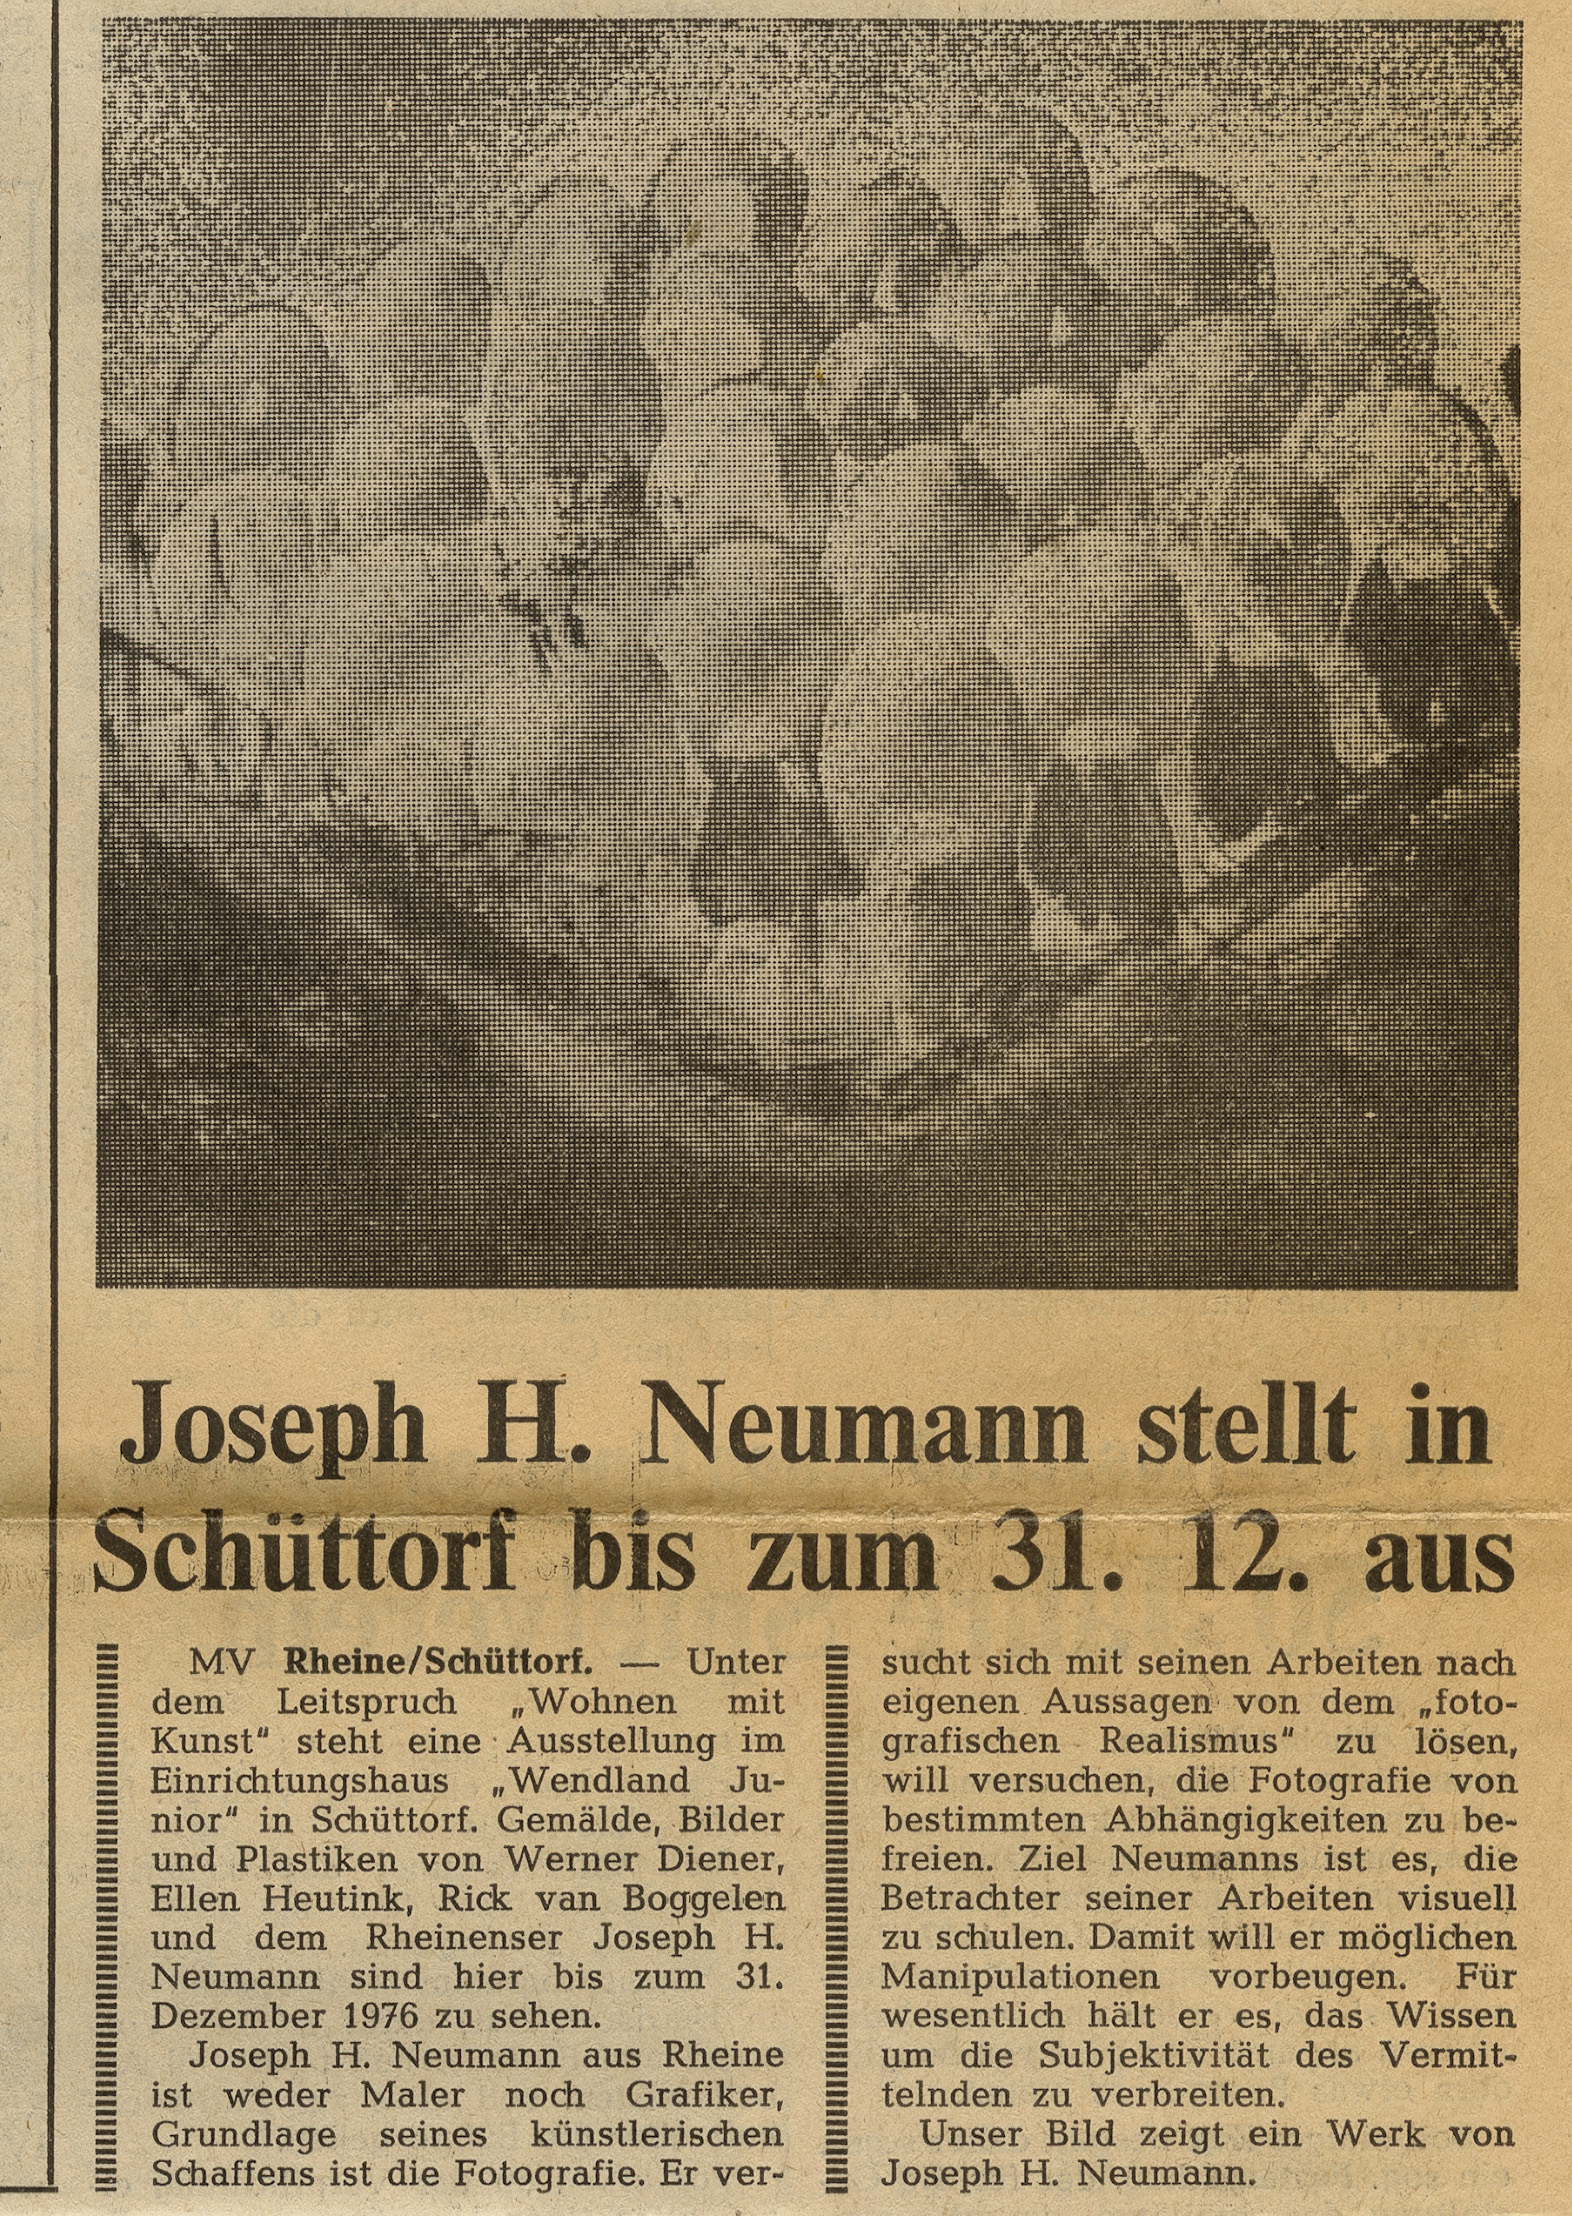 Münsterländische Volkszeitung 22nd December, 1976